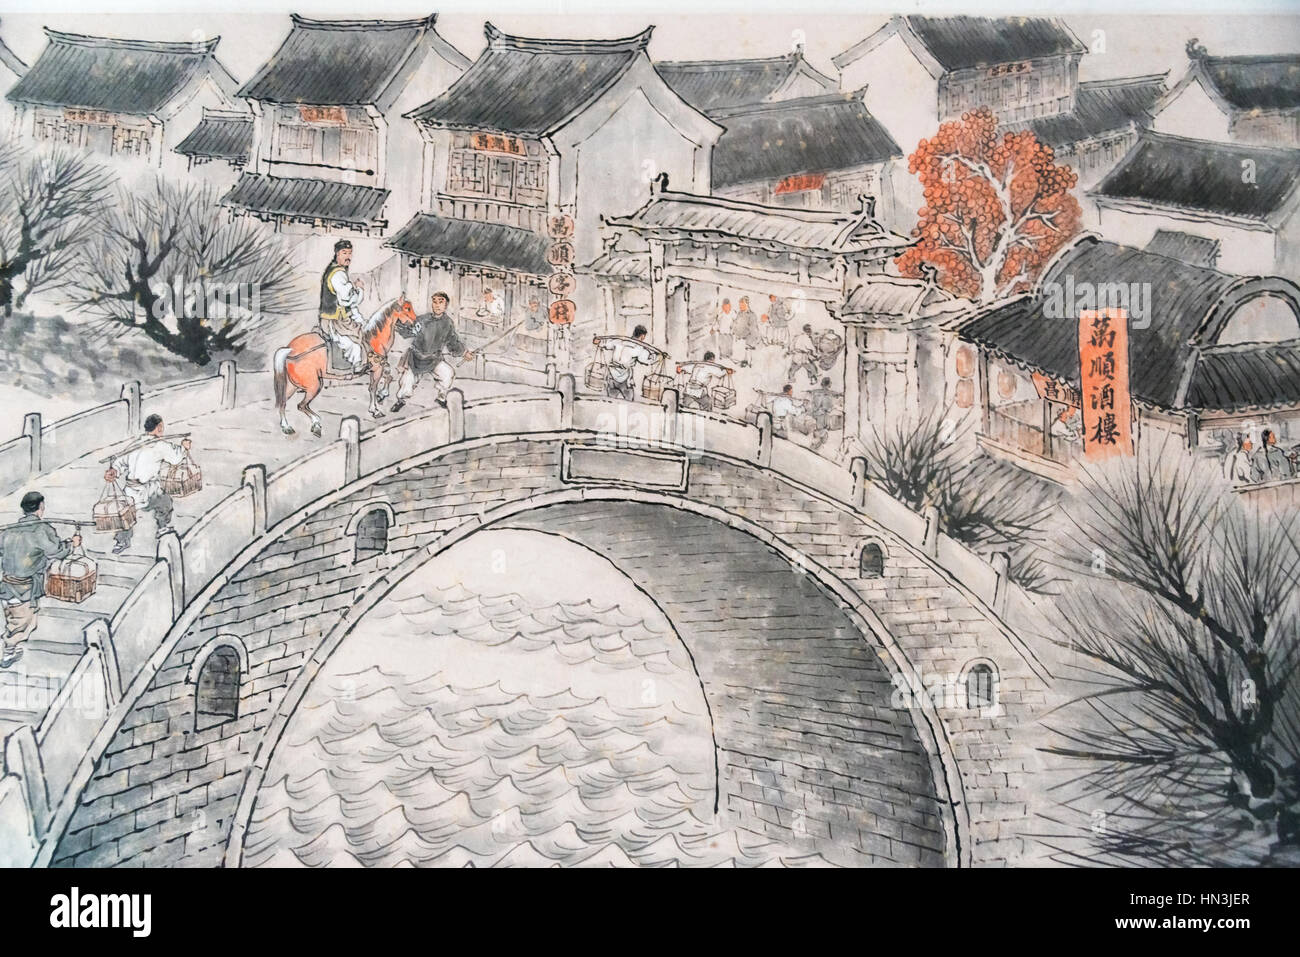 Gemälde, das Leben der Menschen entlang des Canal Grande in den alten Tagen, die antike Stadt Taierzhuang, Provinz Shandong, China Stockfoto